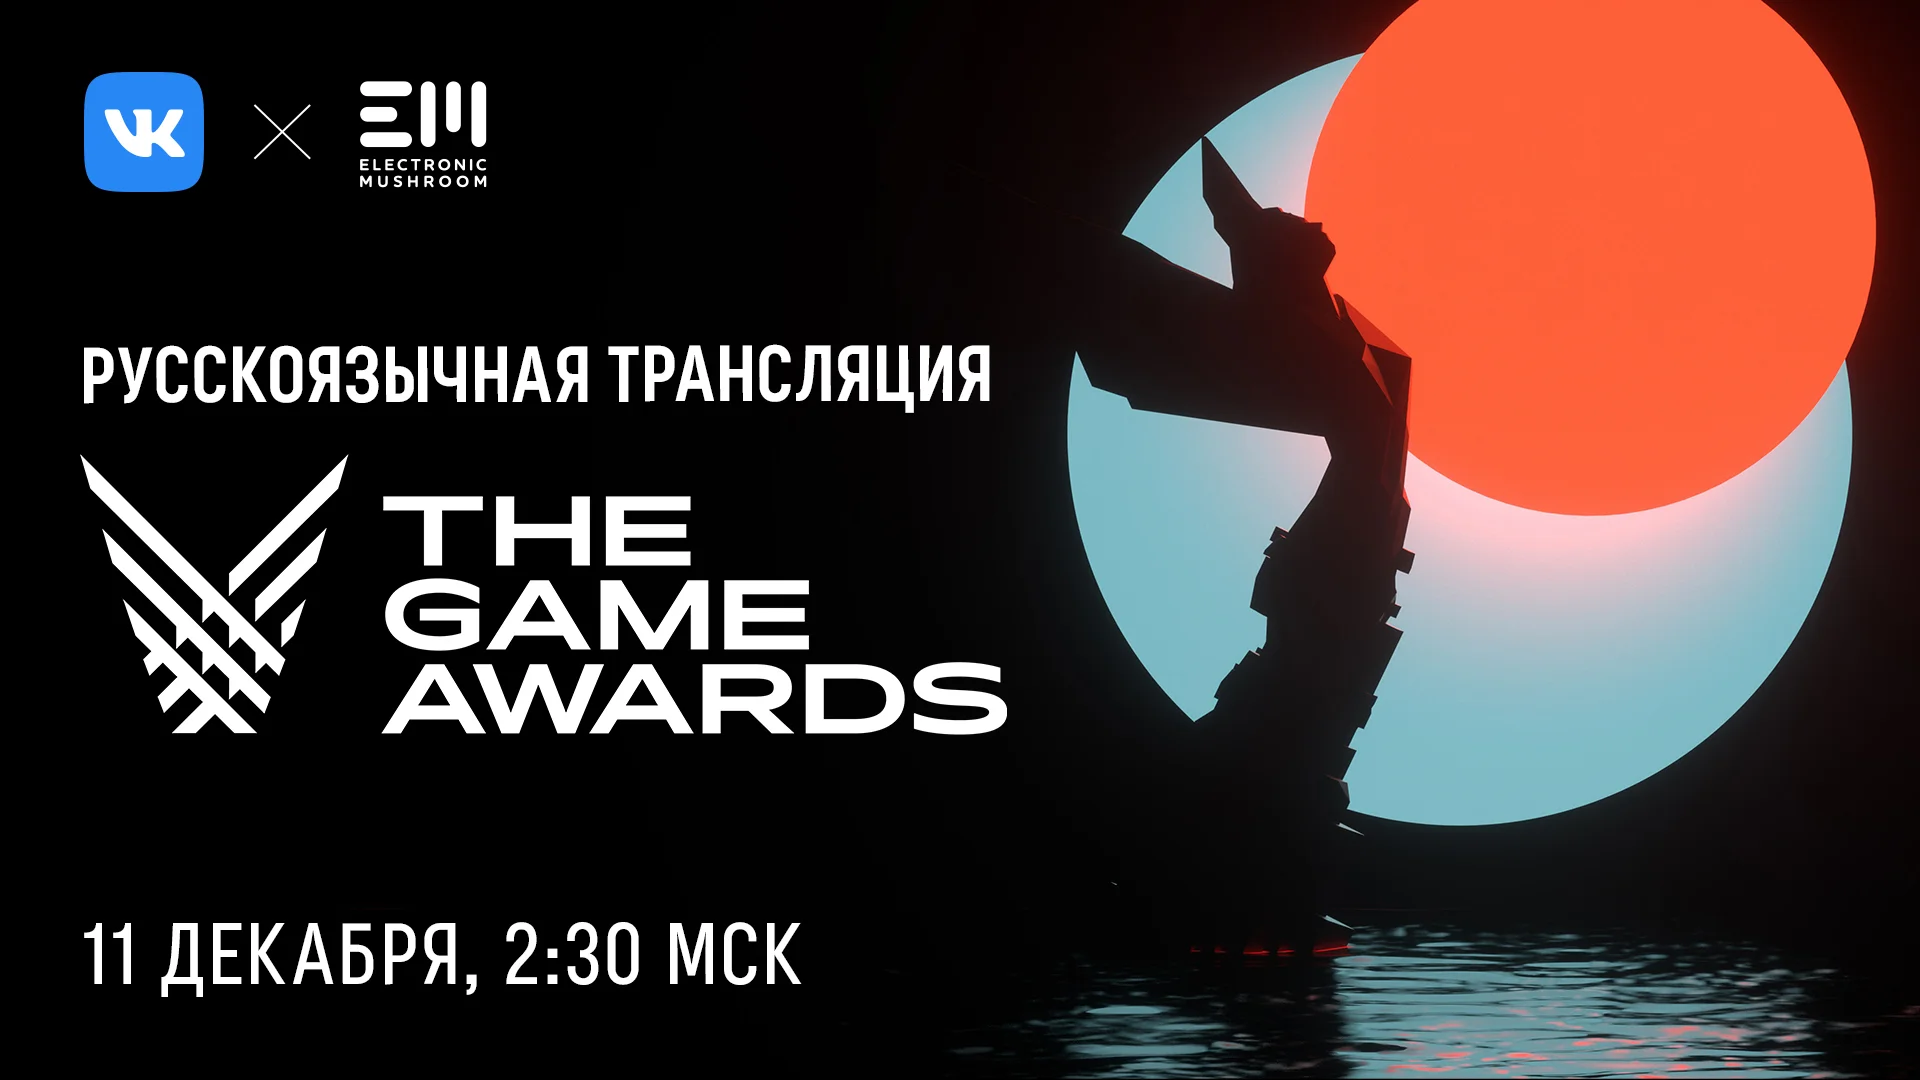 ВКонтакте организует трансляцию The Game Awards 2020 с комментариями на русском - фото 1